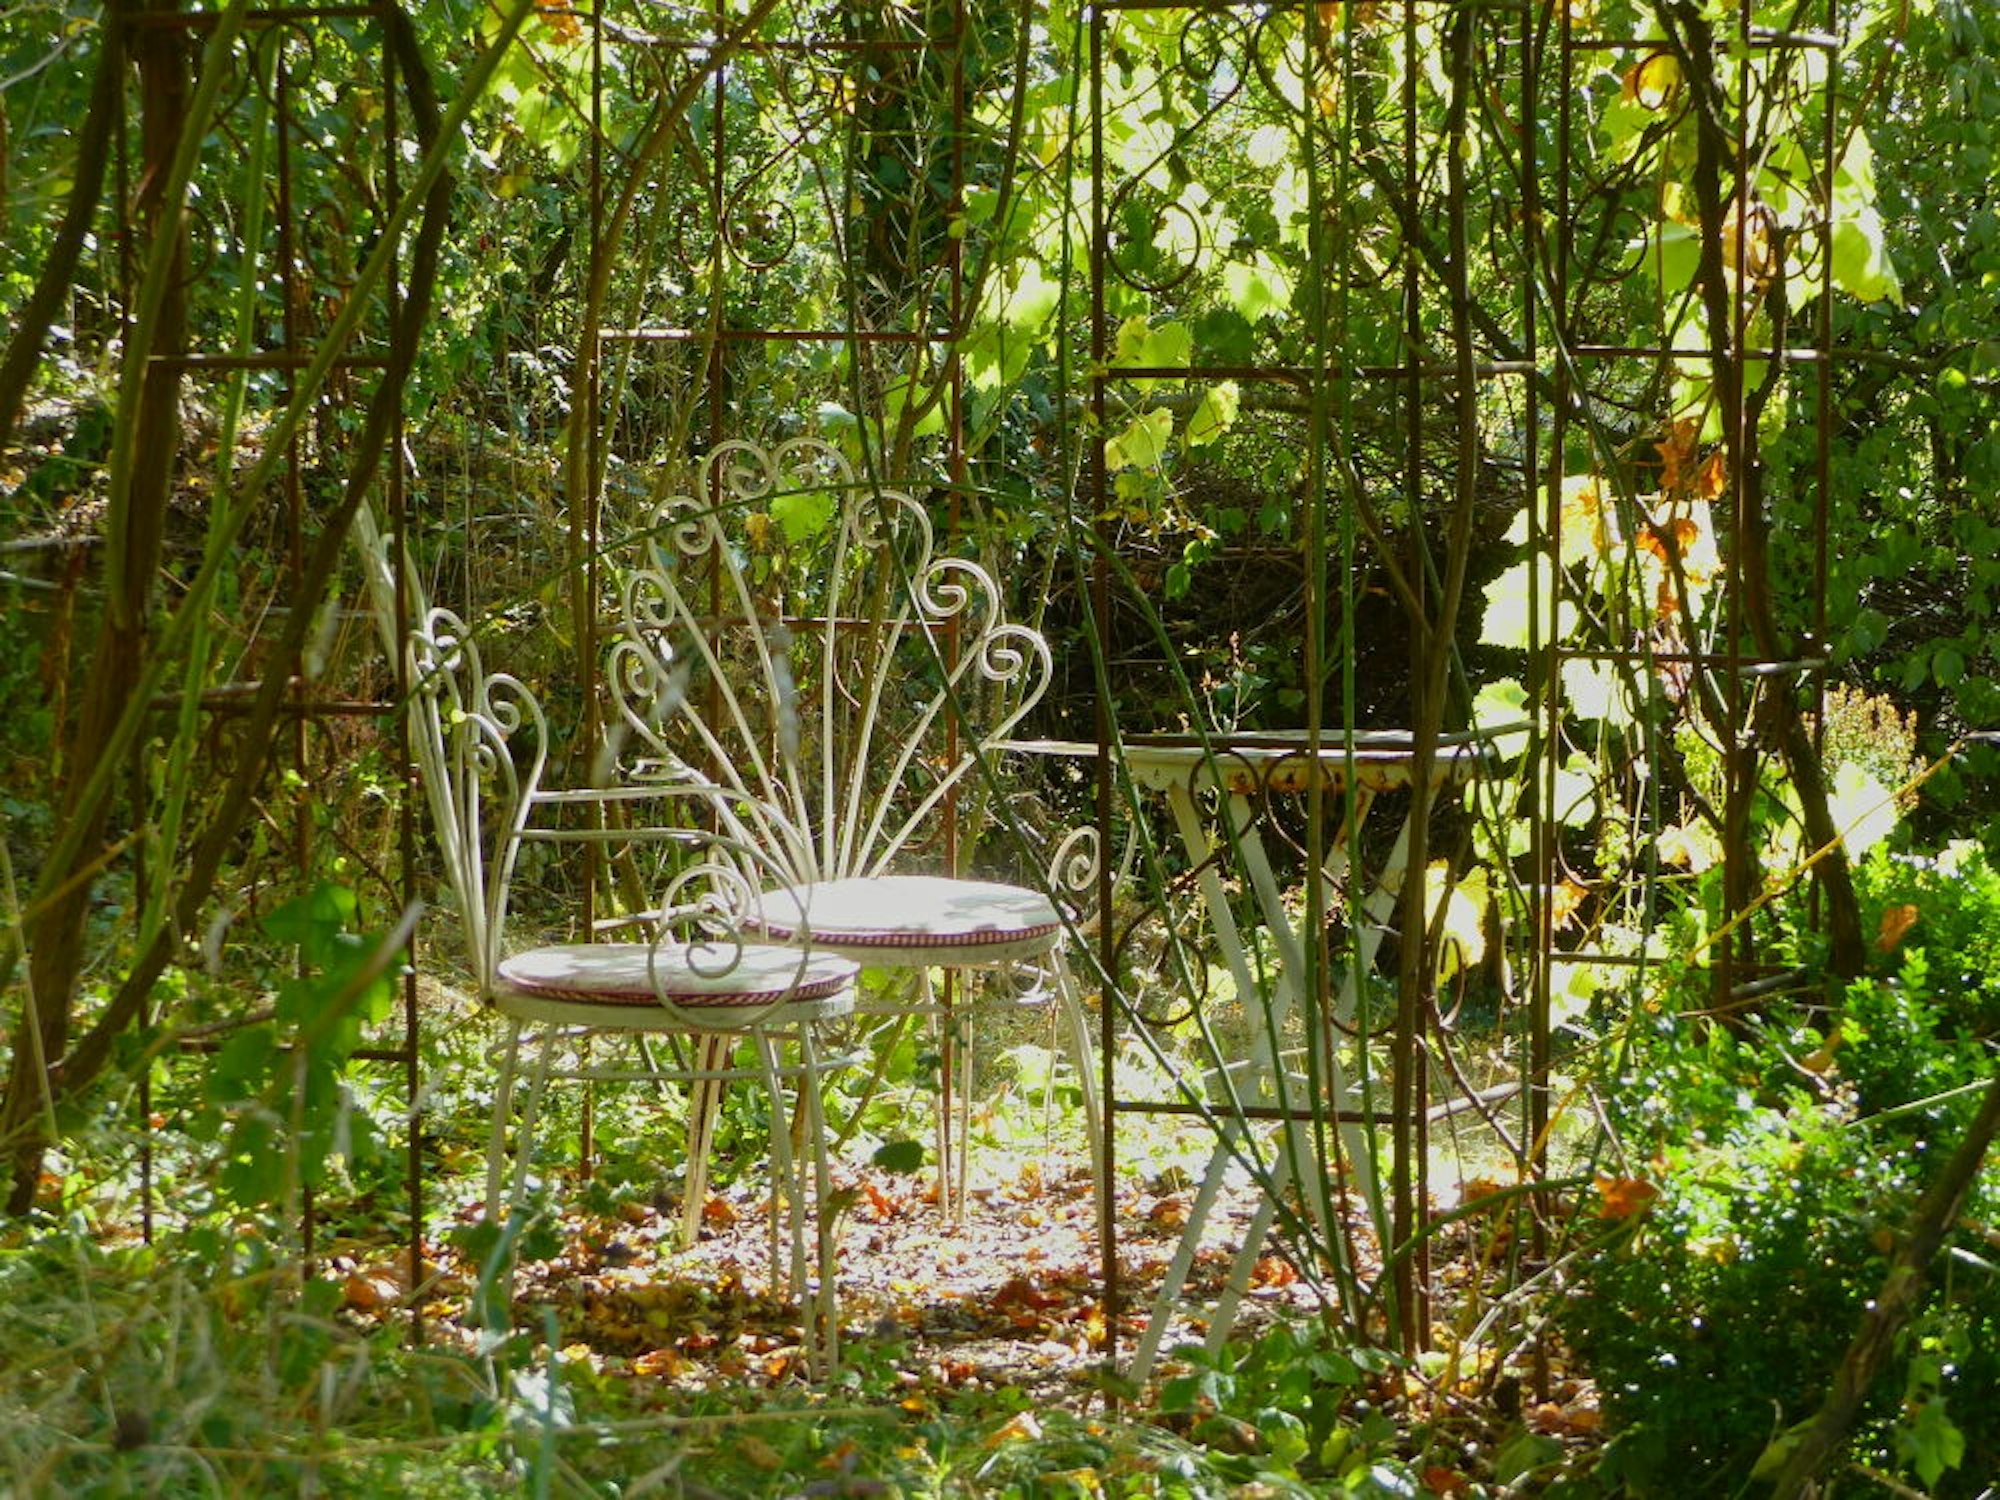 Menschenfreundlich ist der Garten der Wopfners auch, an vielen Ecke gibt es Sitzgelegenheiten.